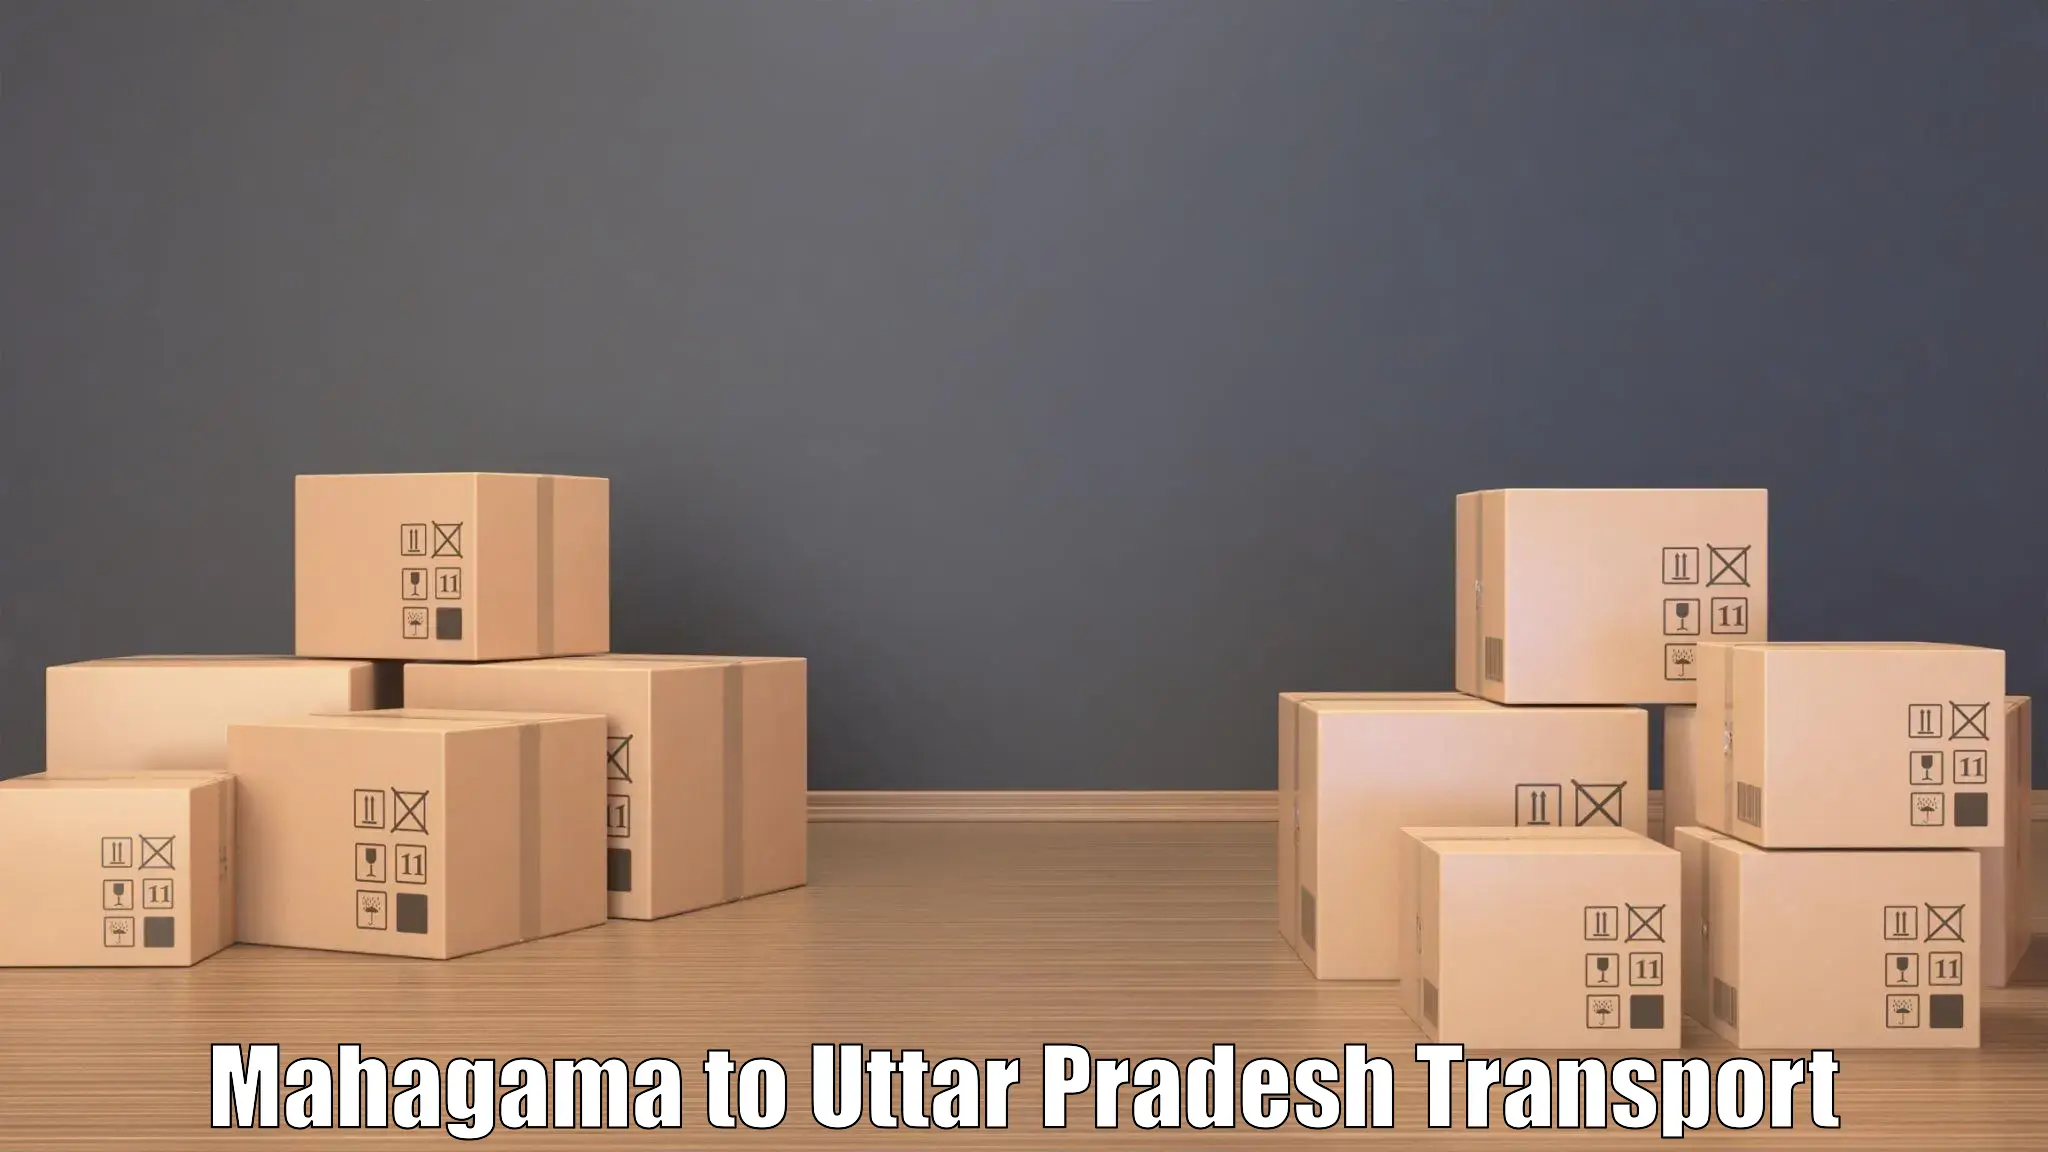 Cargo train transport services Mahagama to Shravasti